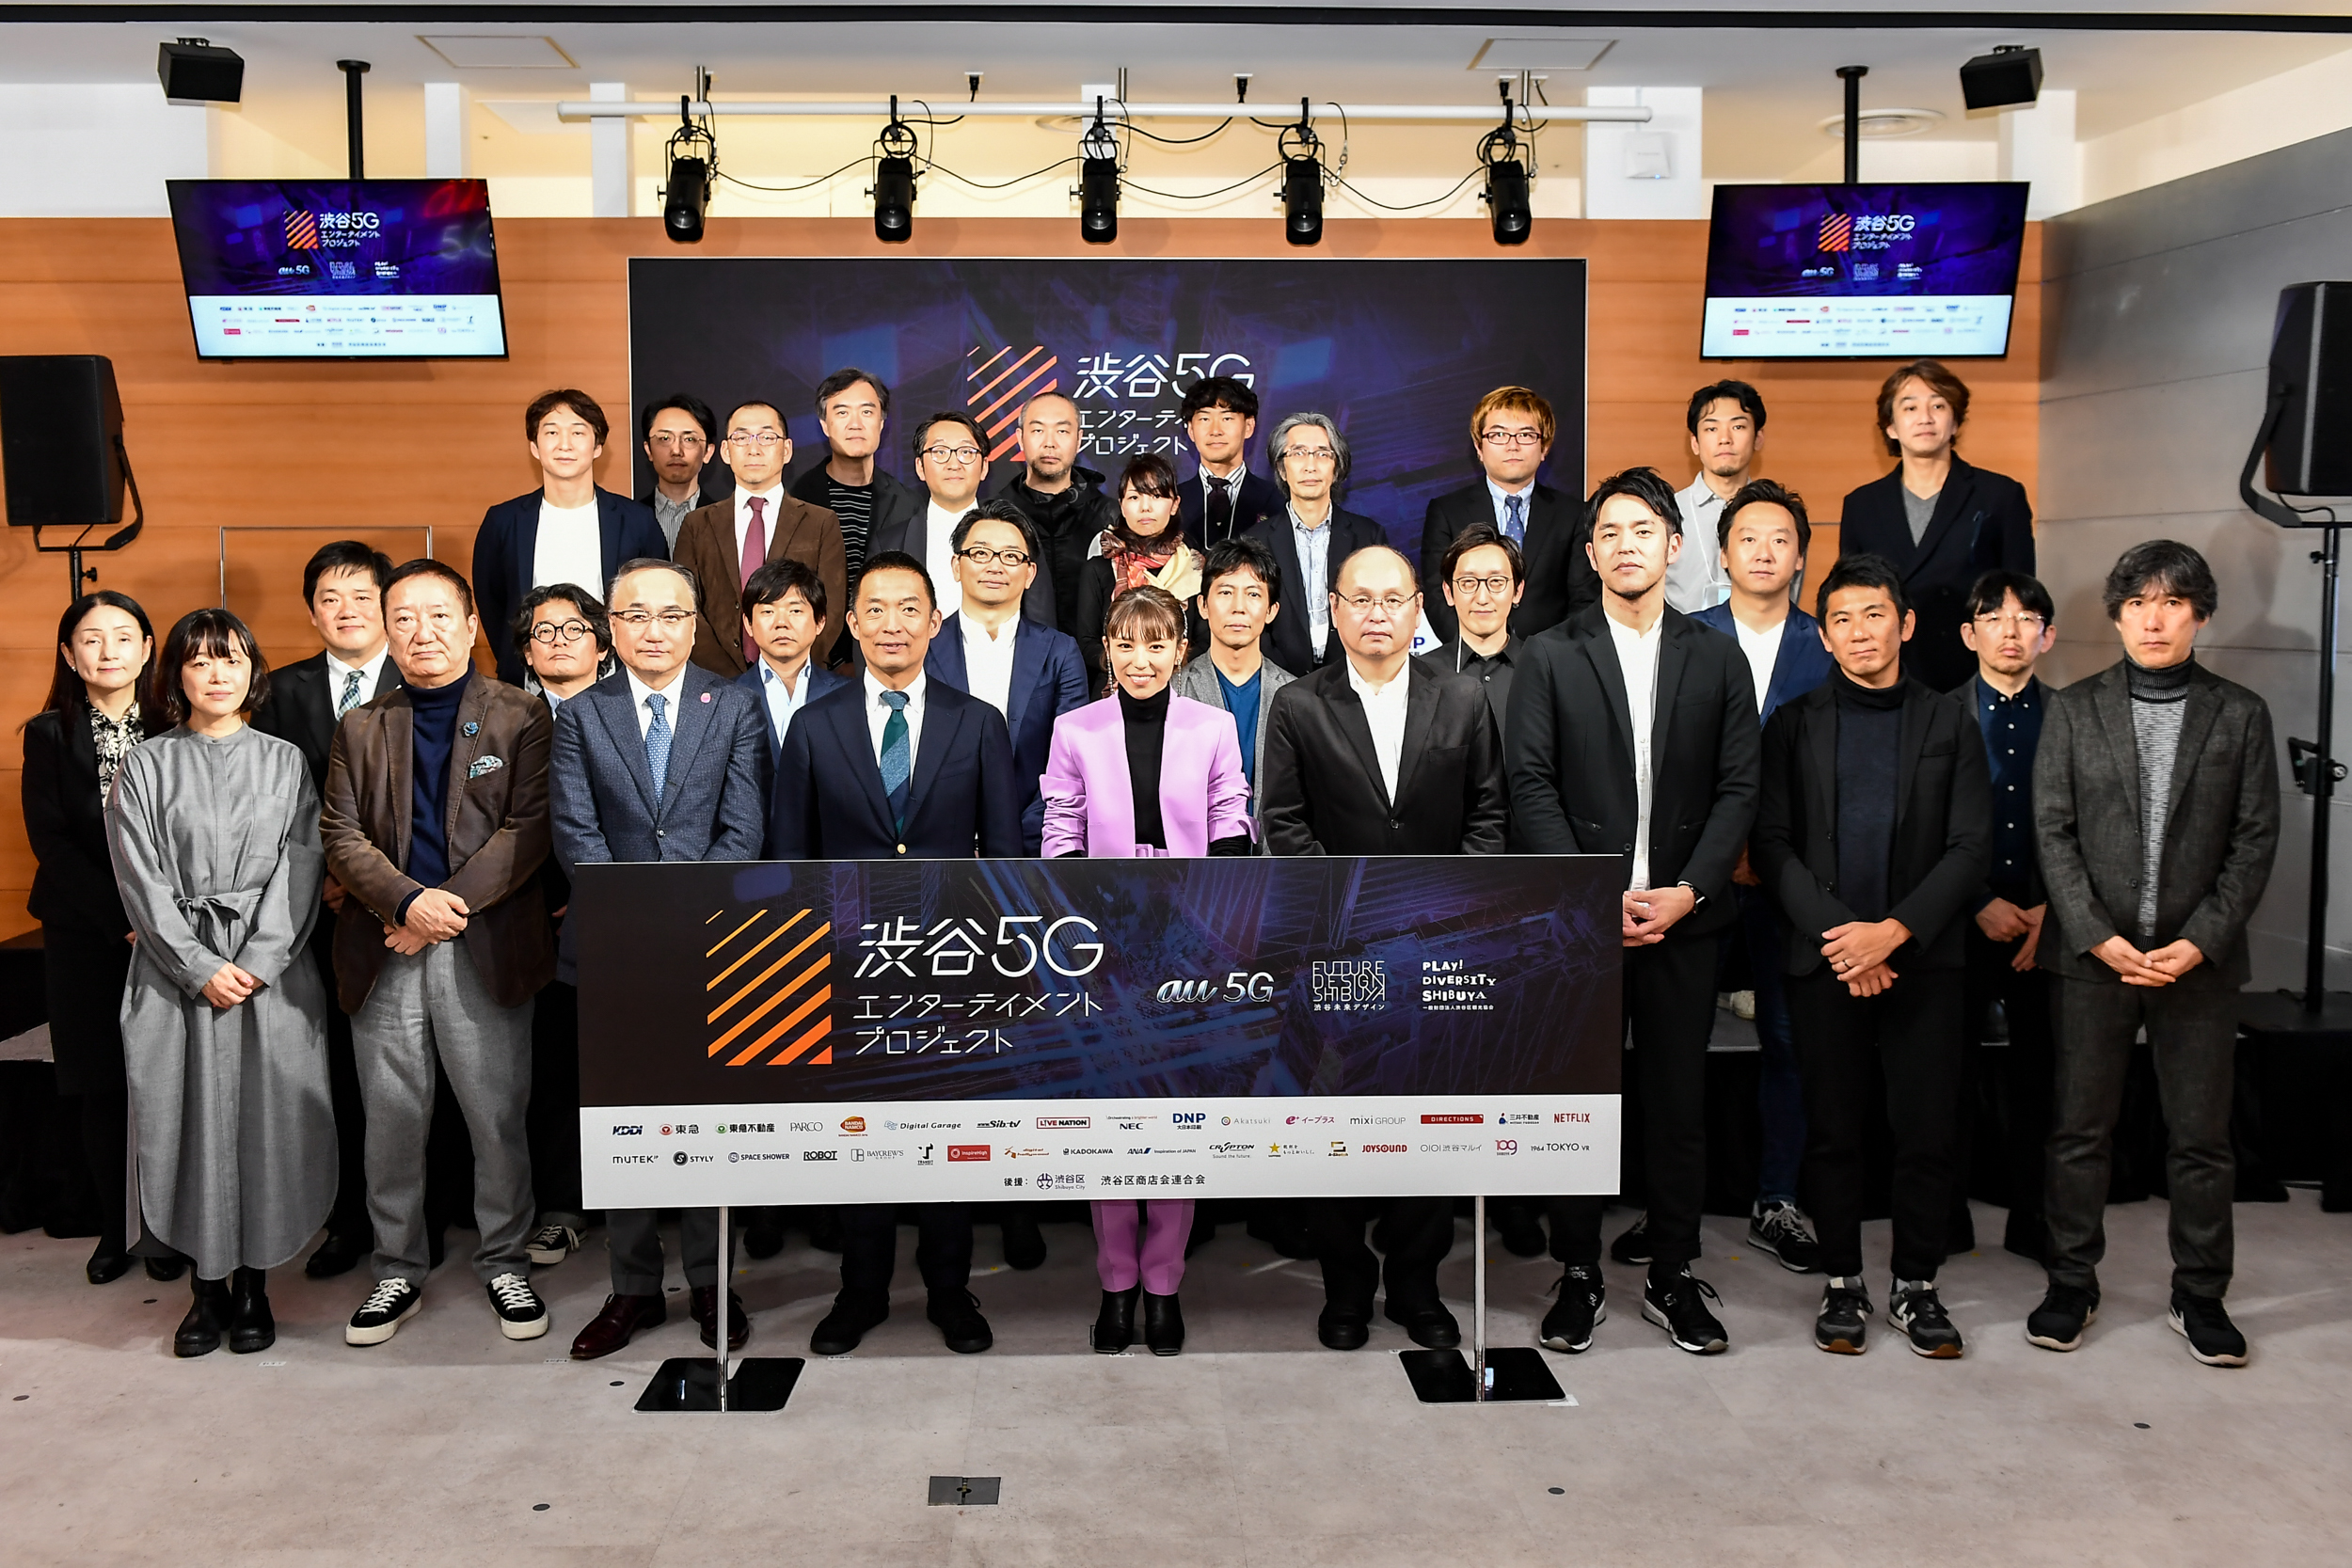 東急、パルコ、ベイクルーズら32社が参画 「渋谷5Gエンターテイメントプロジェクト」始動